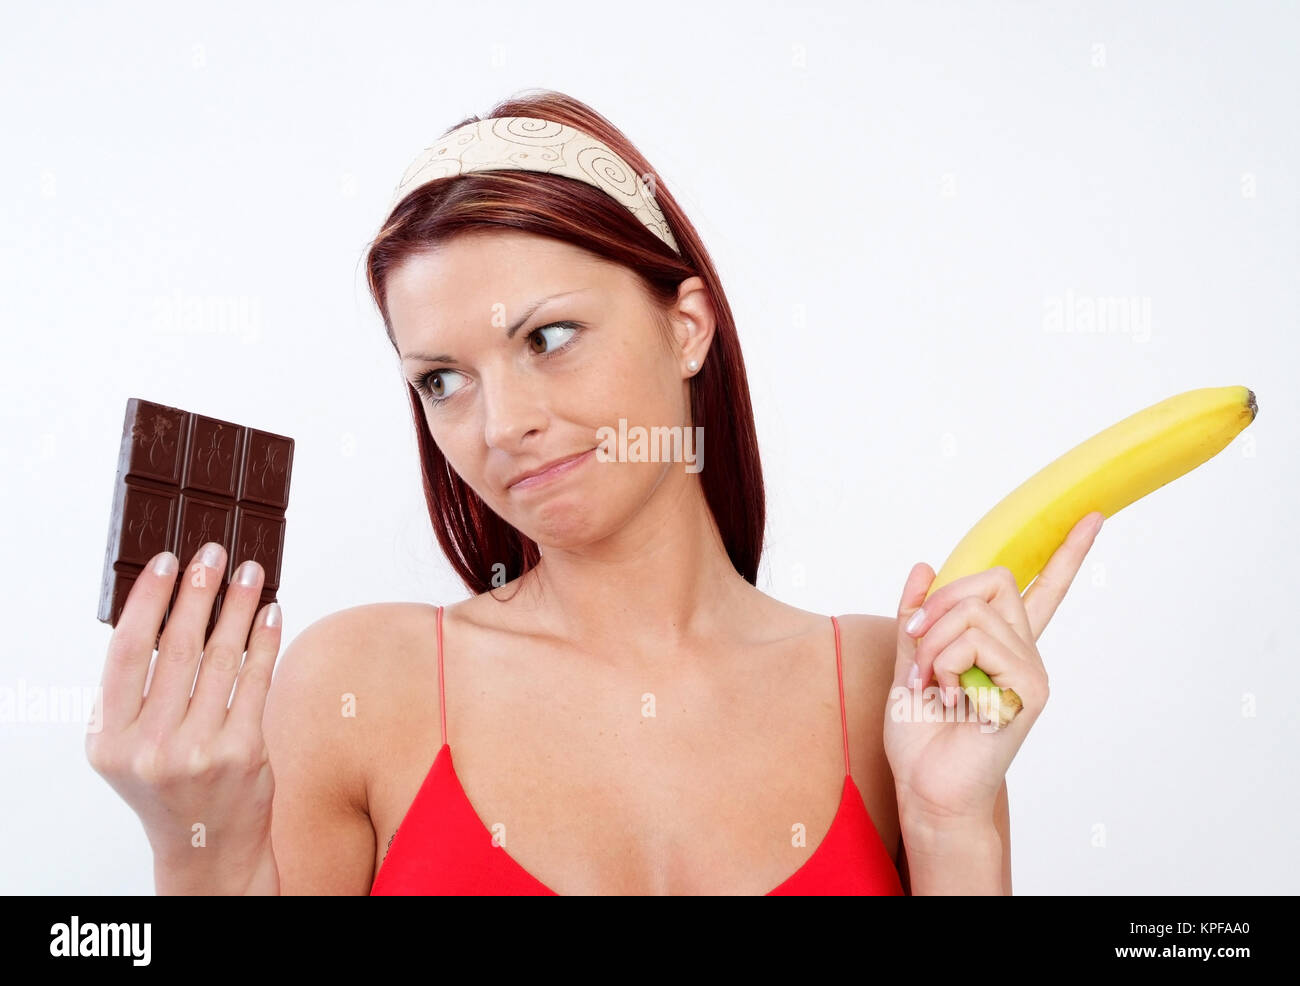 Junge Frau kann sich nicht zwischen Schokolade und Banane entscheiden - woman with chocolate and banana Stock Photo